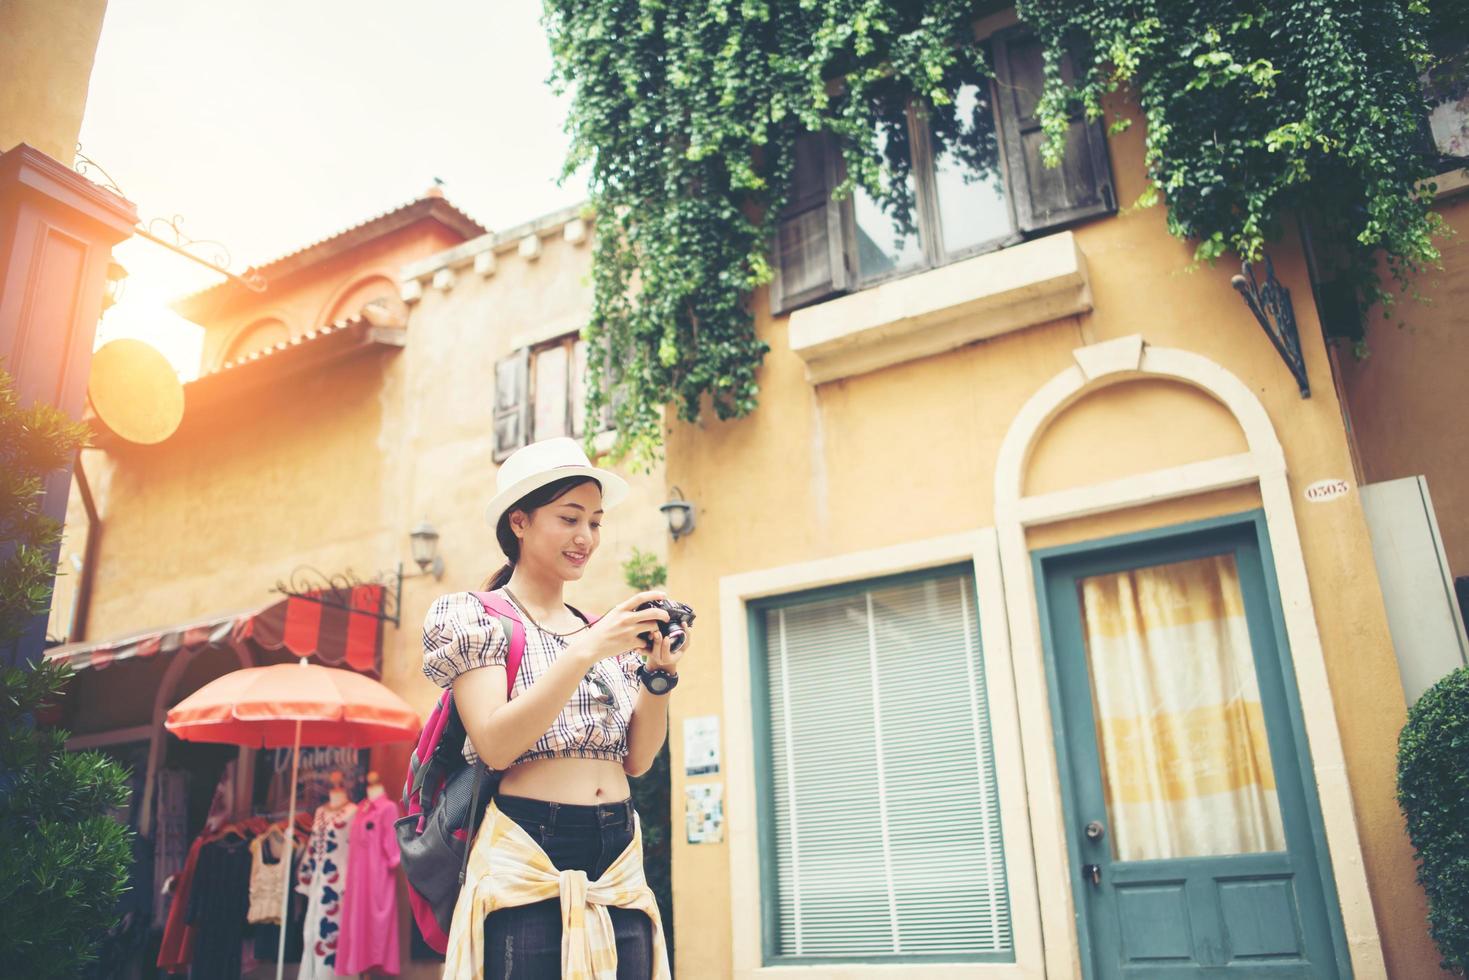 donna giovane hipster godendo di scattare una foto nel contesto urbano